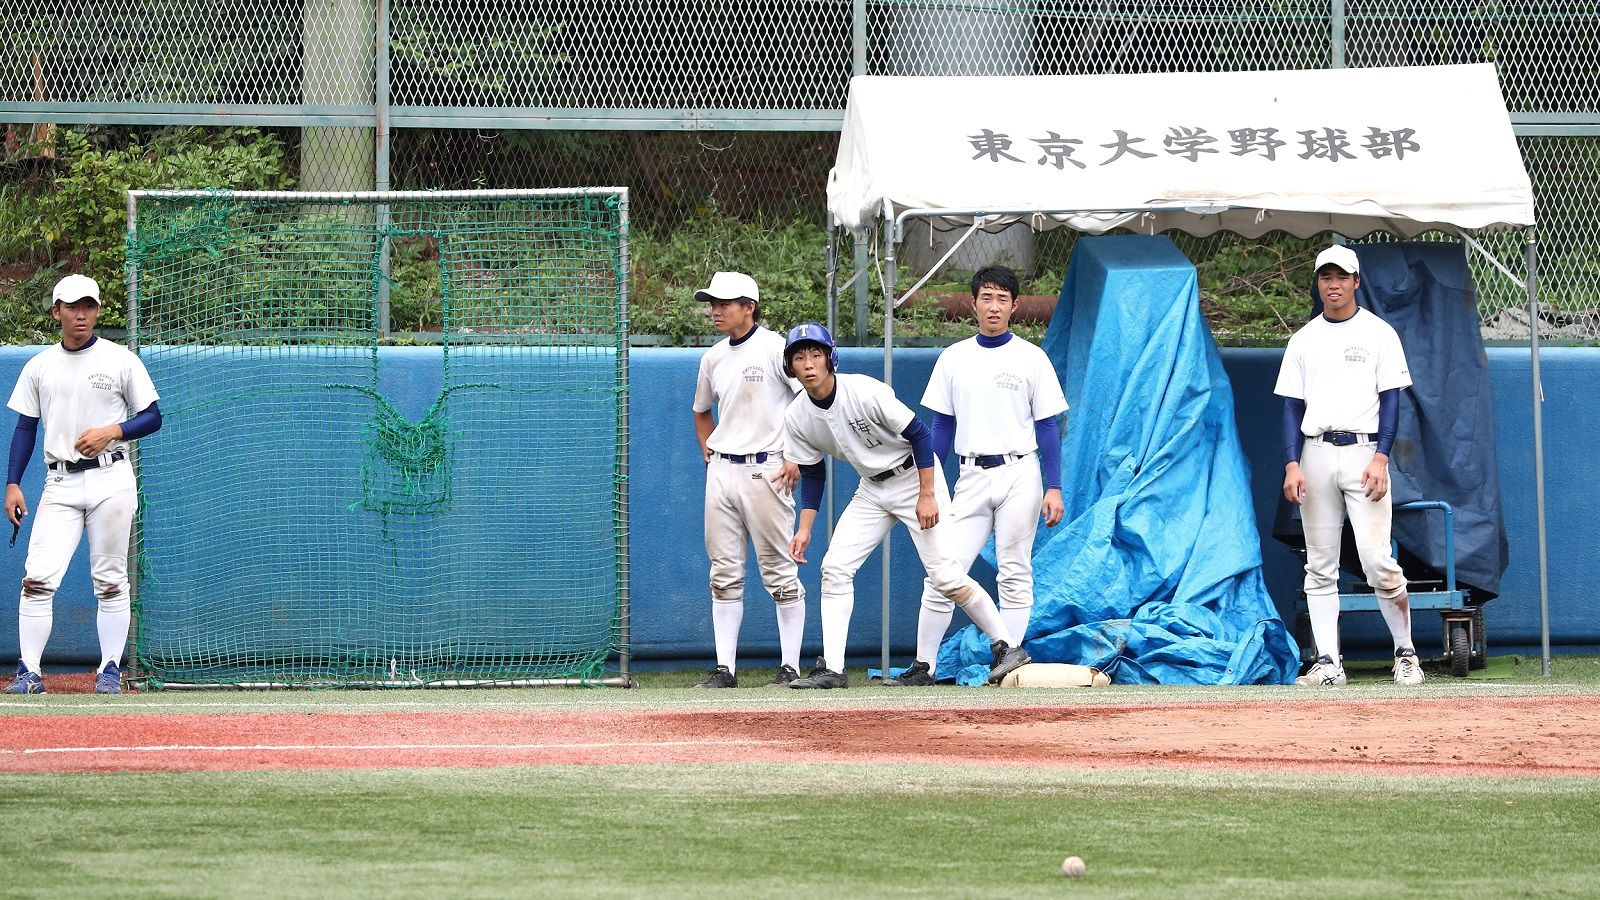 東大が 東京六大学野球 で戦い続ける意味 スポーツ 東洋経済オンライン 社会をよくする経済ニュース